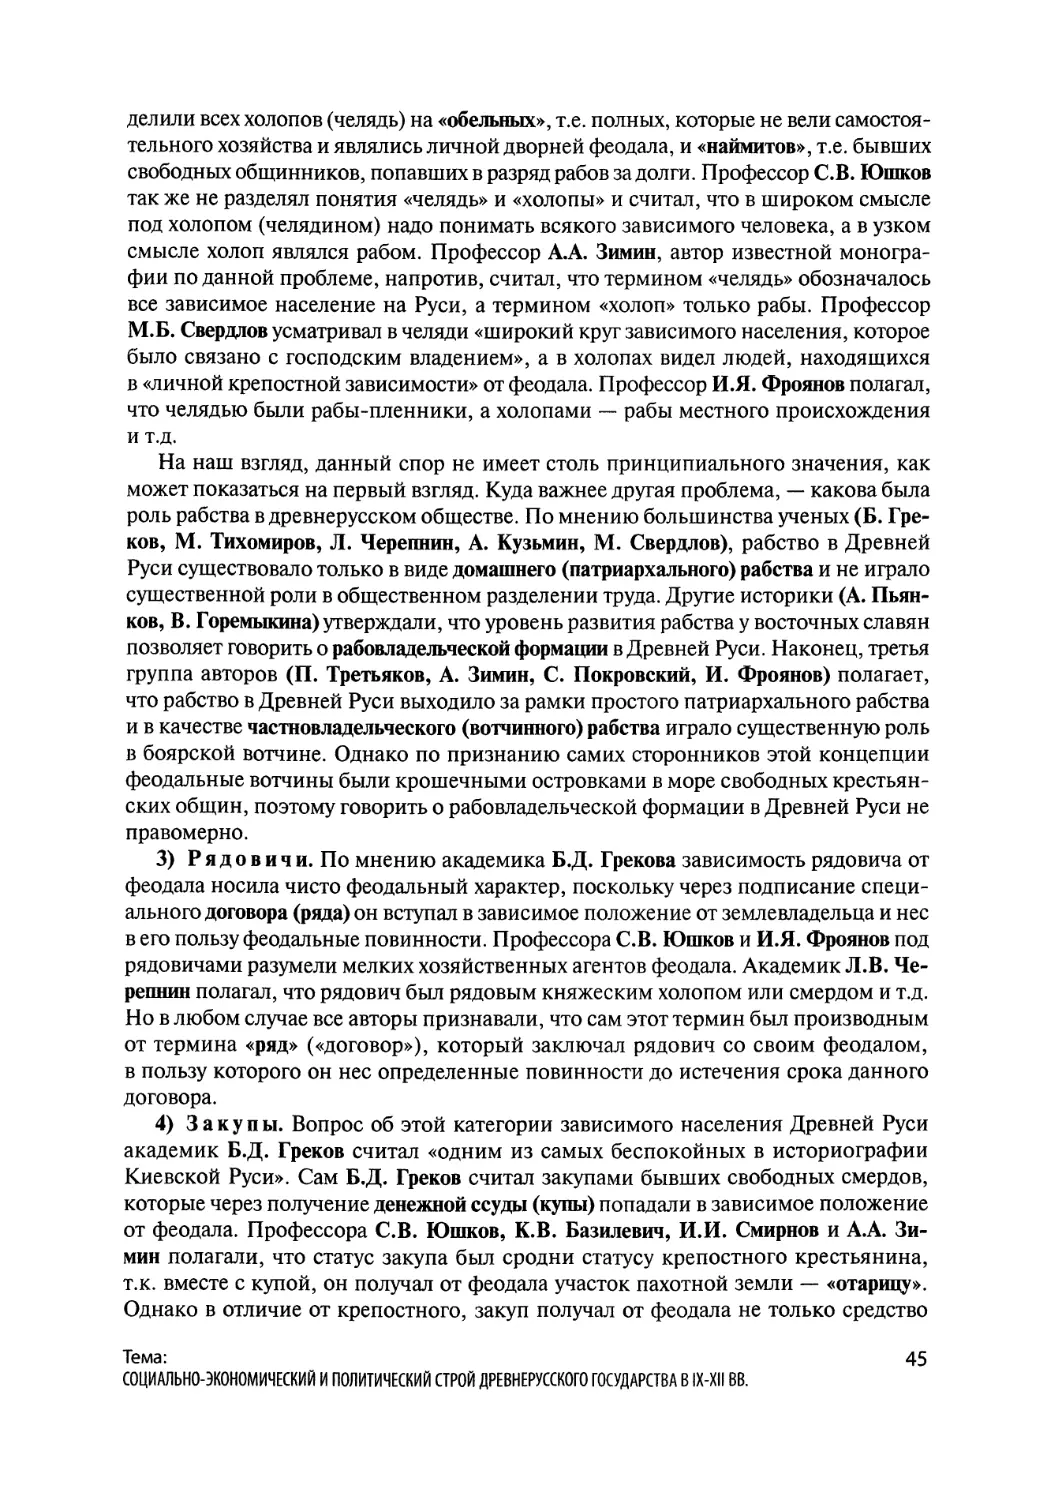 Политическая история Древней Руси при первых князьях в середине IX - последней четверти X вв.